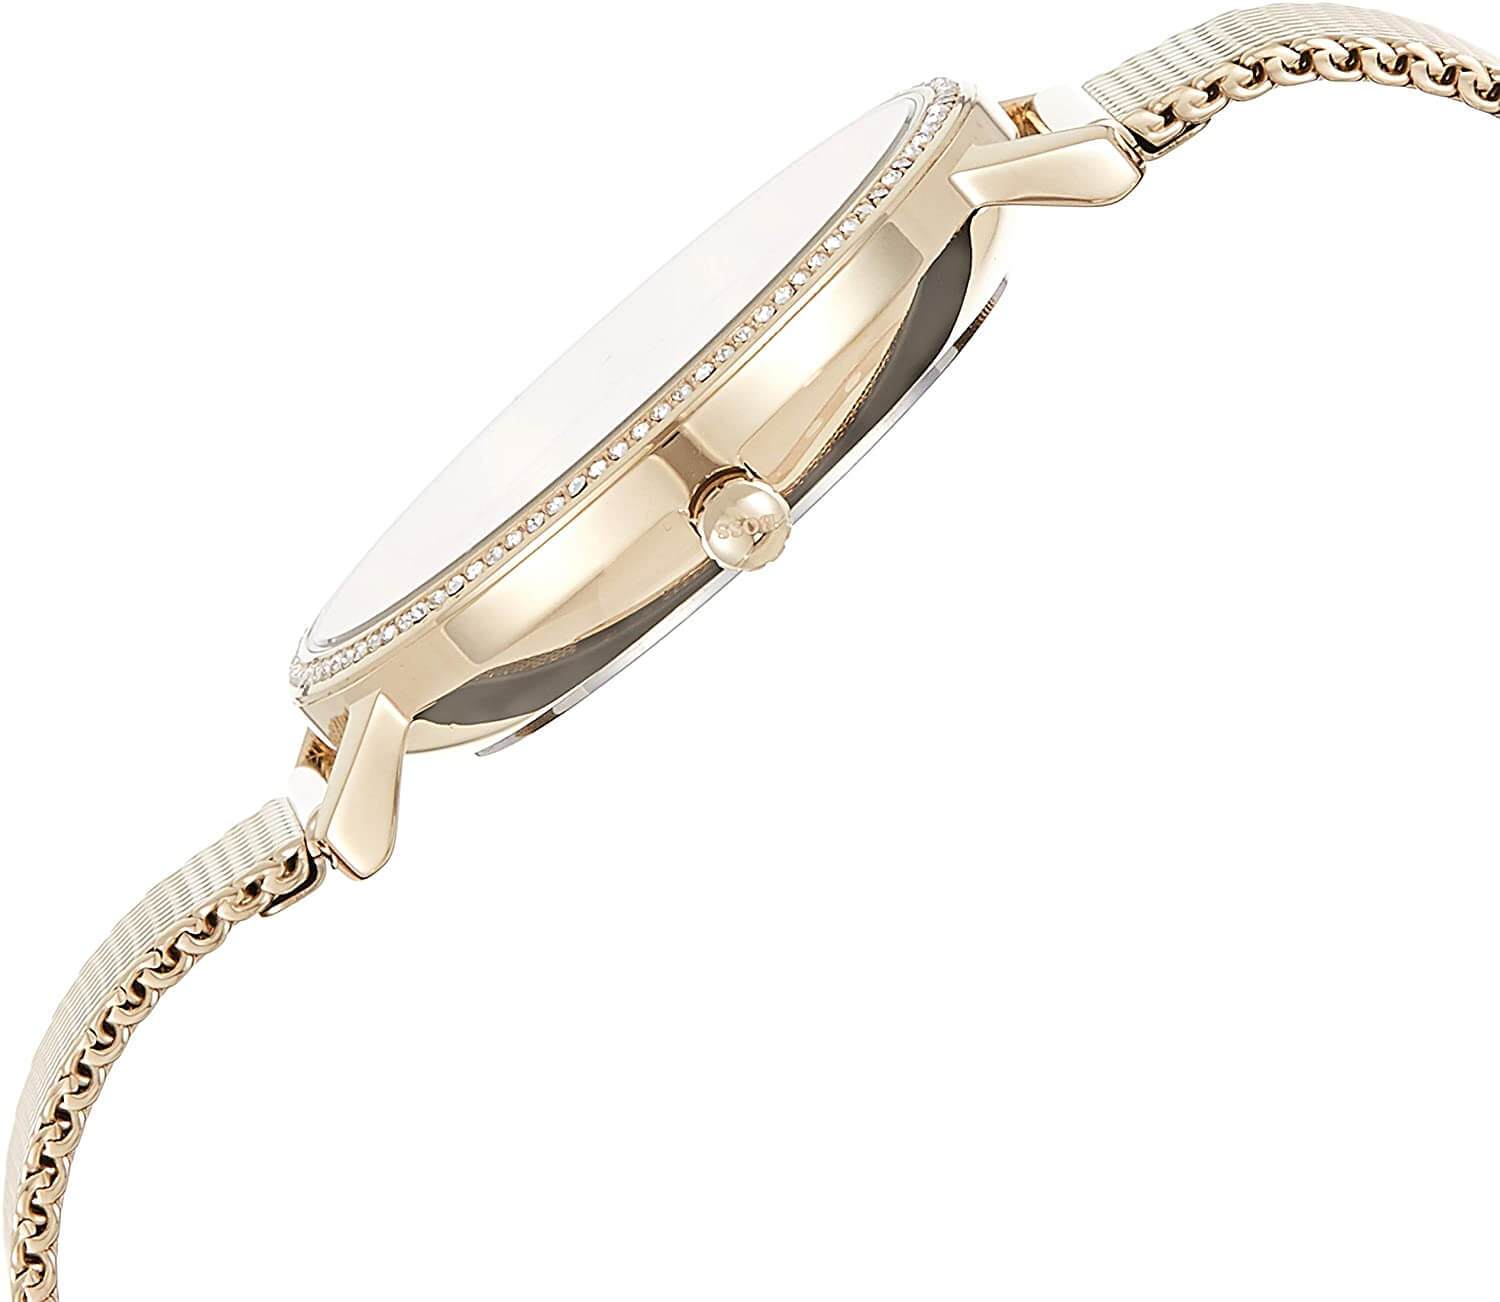 Hugo Boss Infinity Gold Dial Gold Mesh Bracelet Watch for Women - 1502520